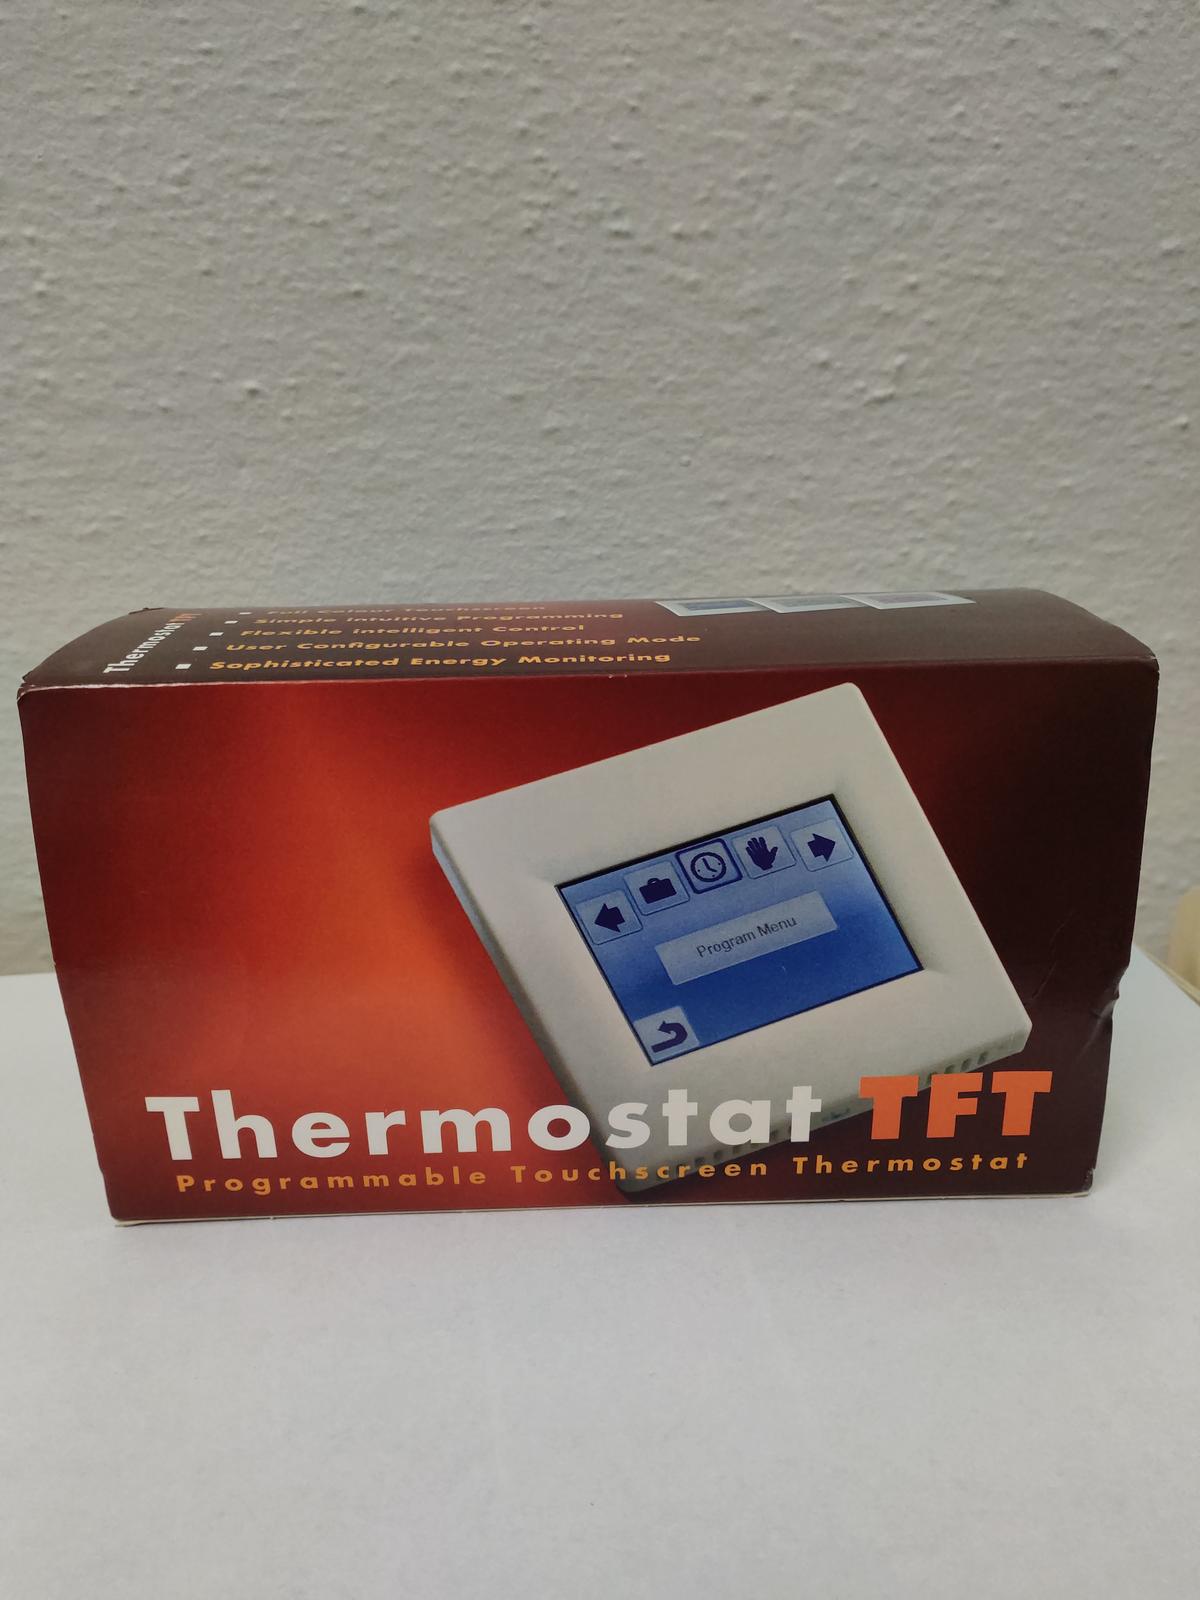 termostat Fenix tft - Obrázok č. 1